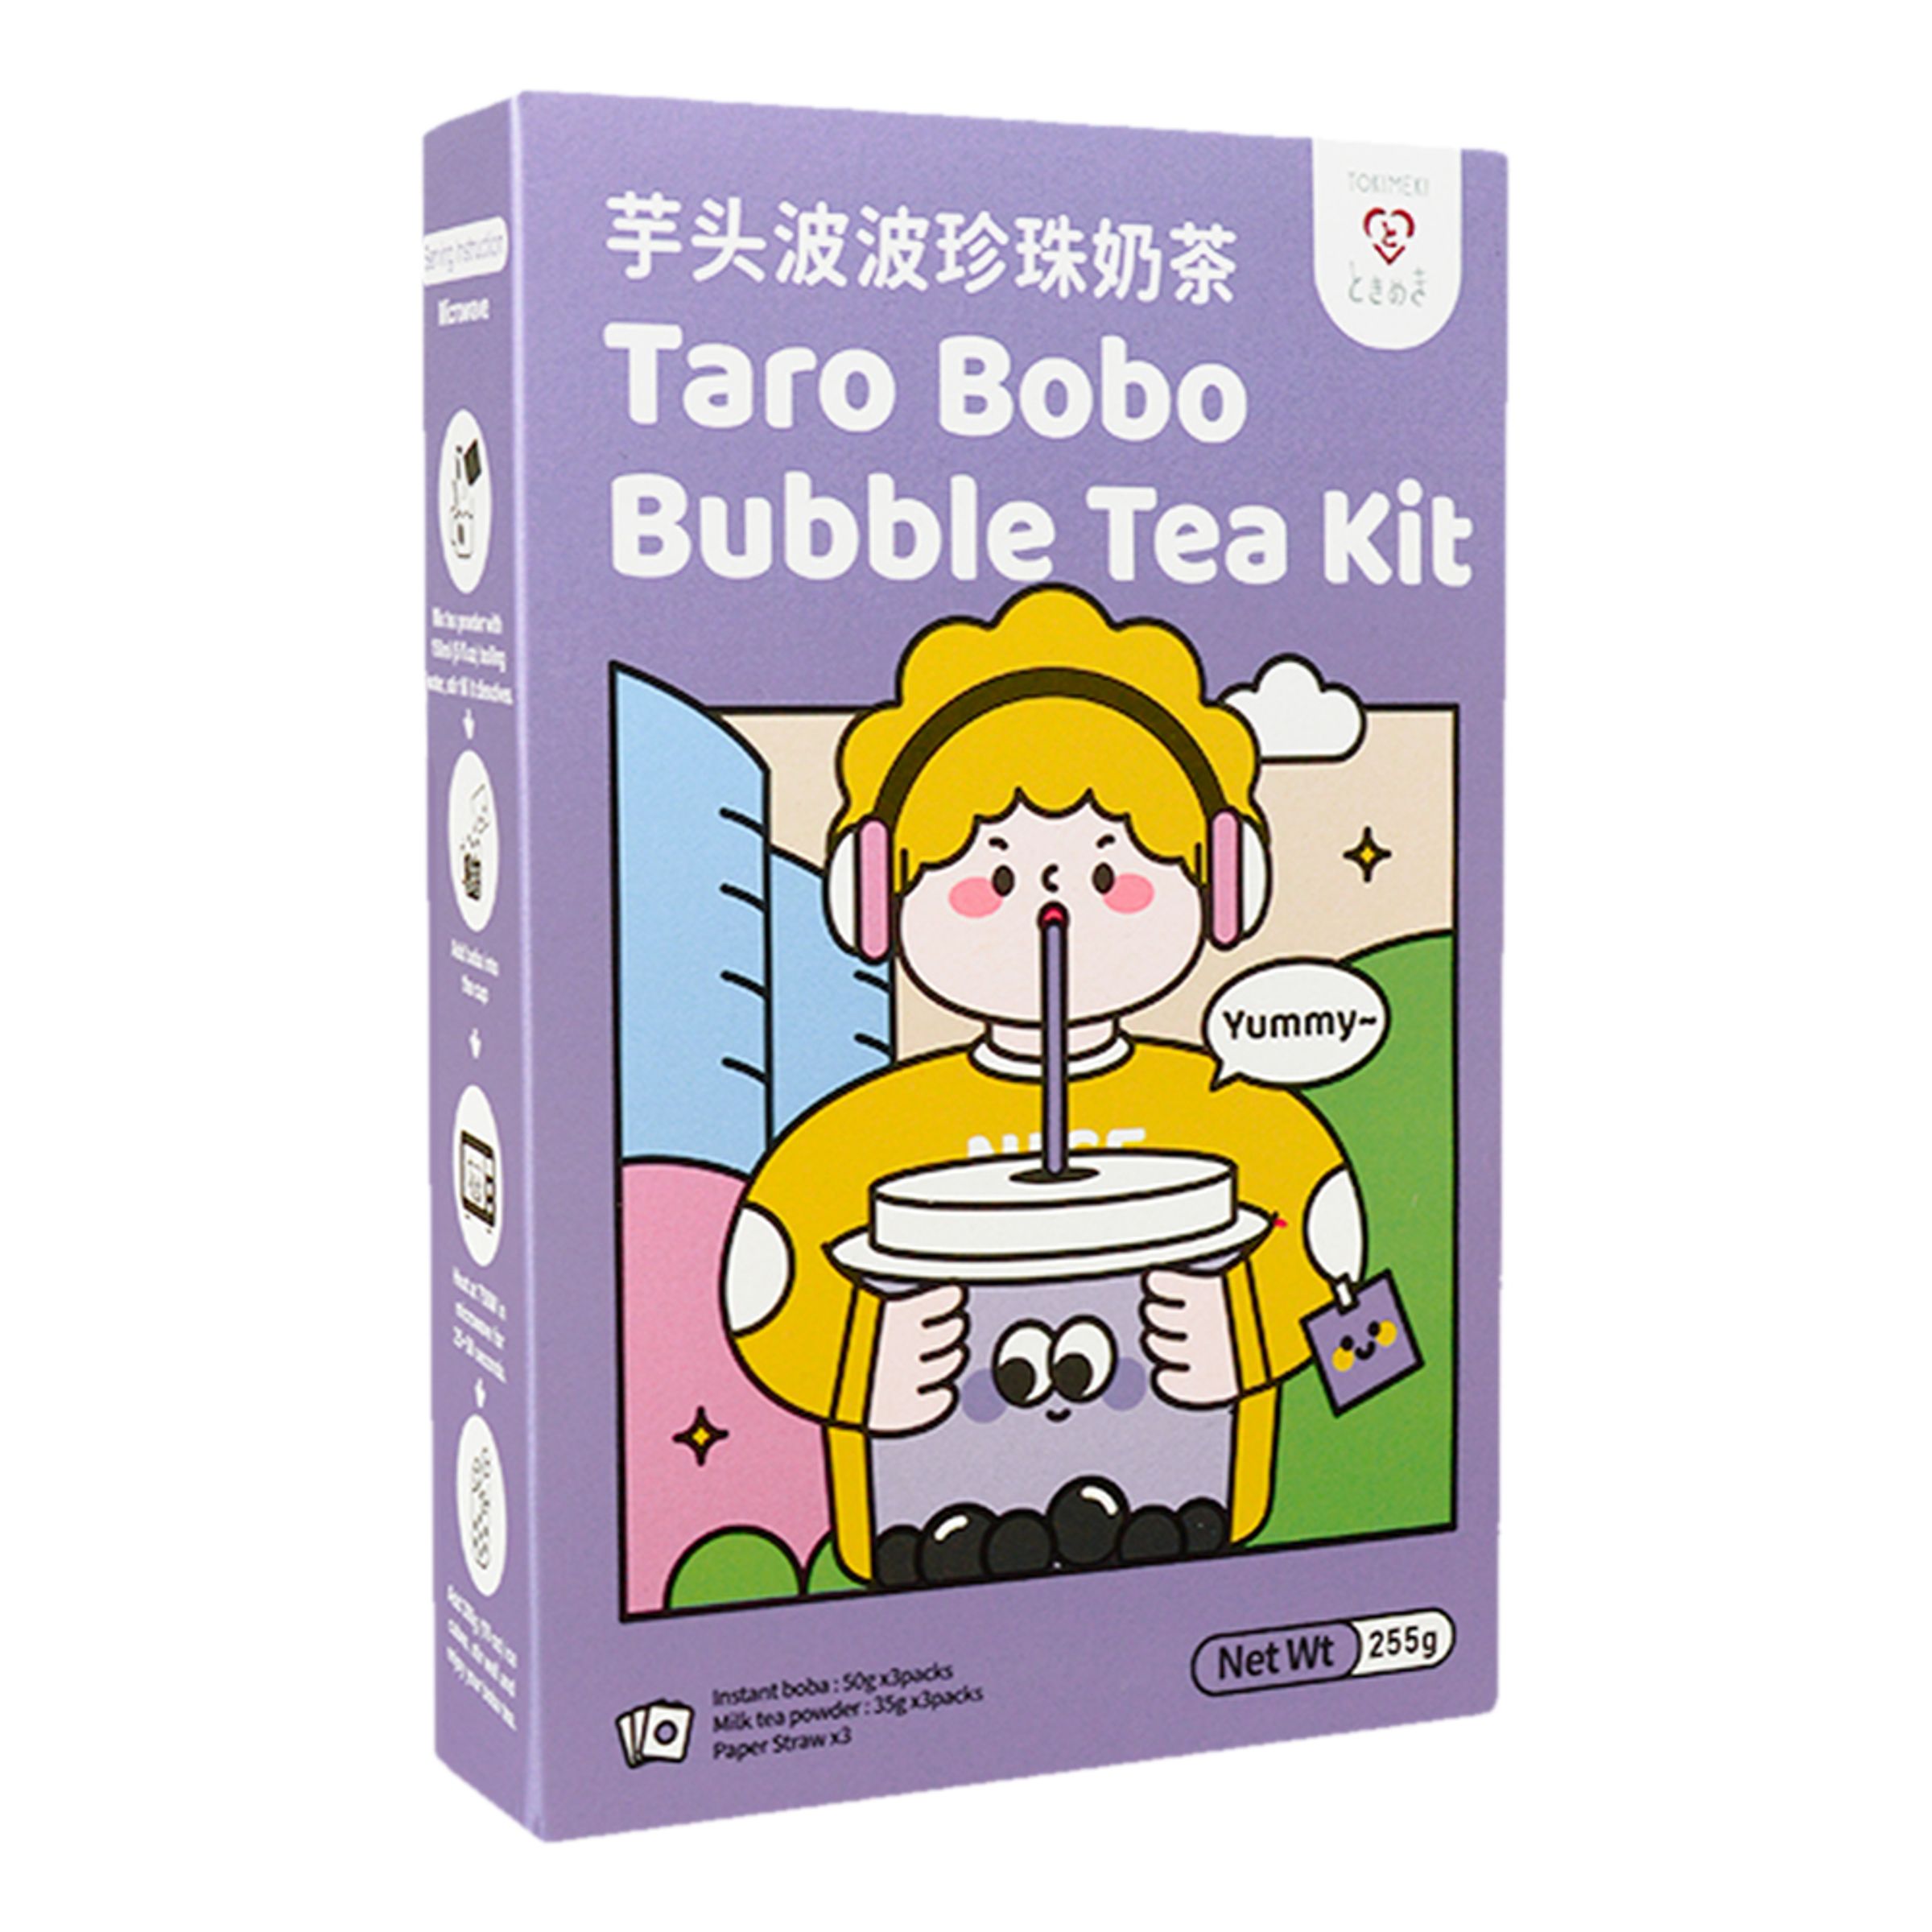 Tokimeki Taro Bobo Bubble Tea Kit - 3-pack